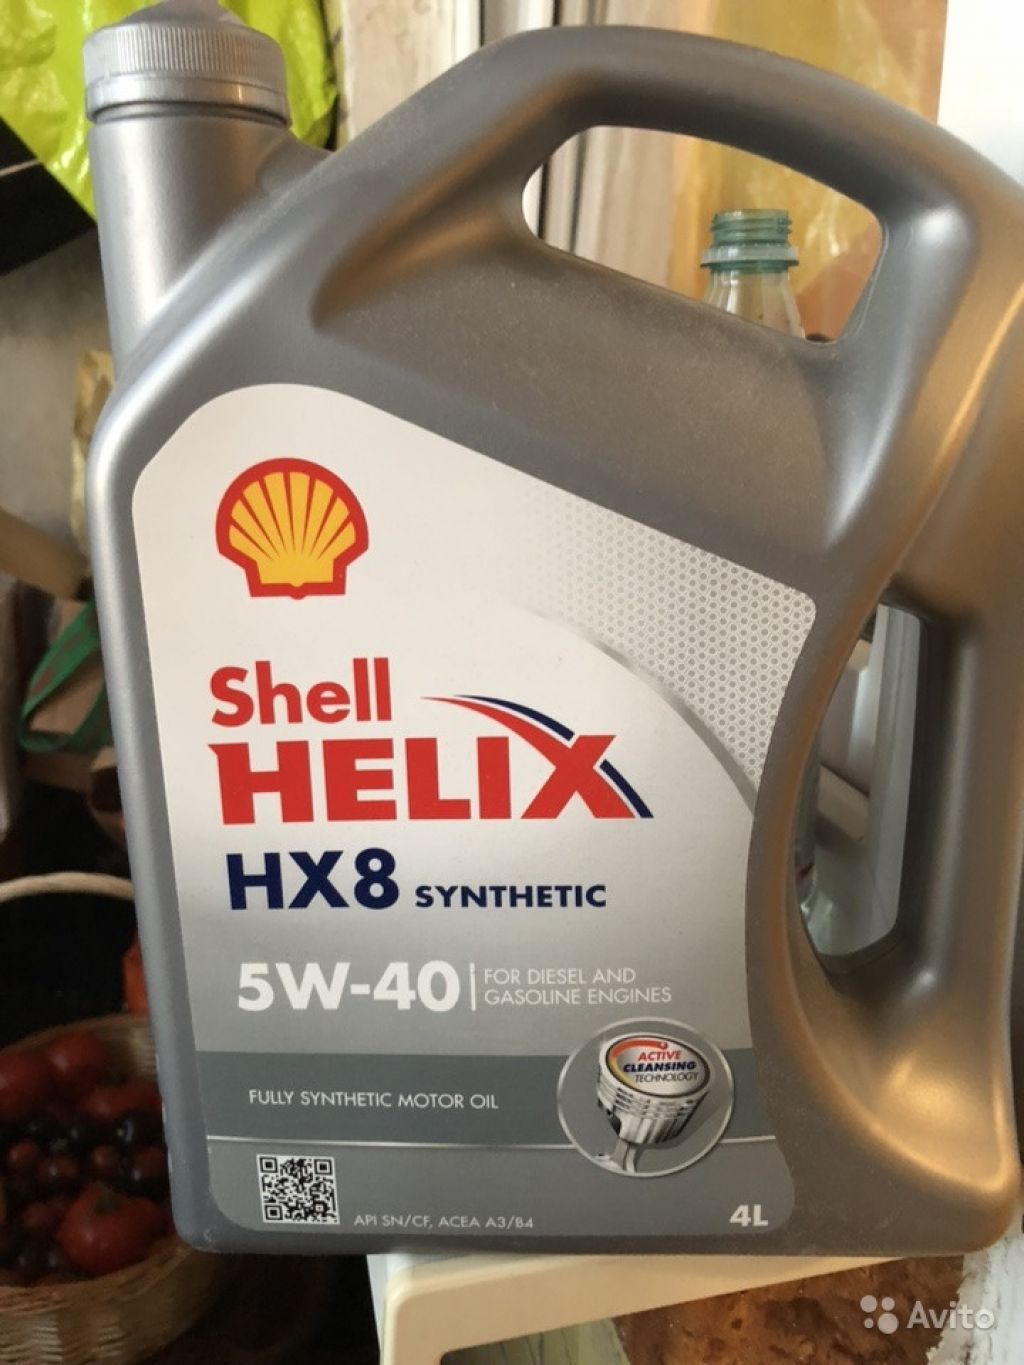 Масло helix hx8 5w40. Shell hx8 Synthetic 5w40. HX 8 Synthetic 5w-40. Shell Helix hx8 Synthetic 5w-40. Шелл Хеликс hx8 5w40 синтетика.